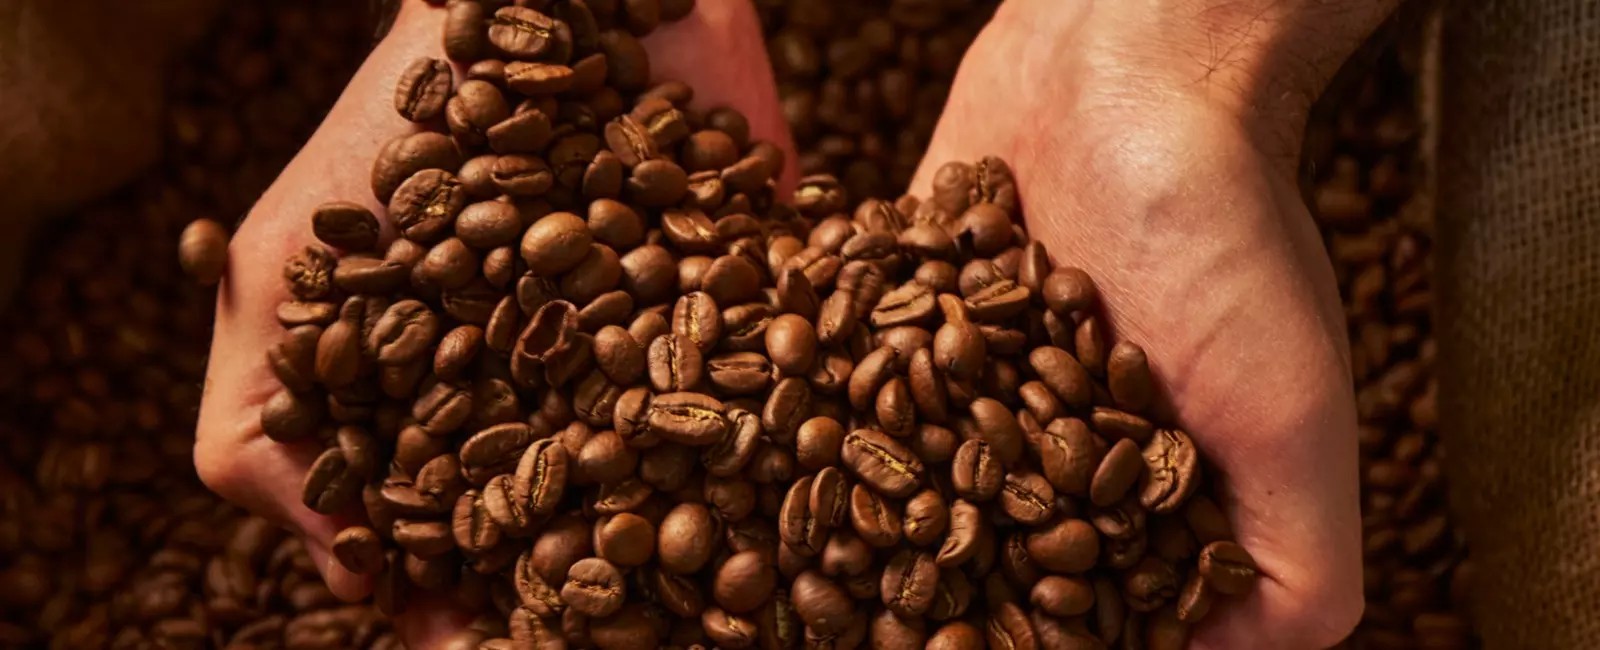 Mãos segurando grãos de café torrados